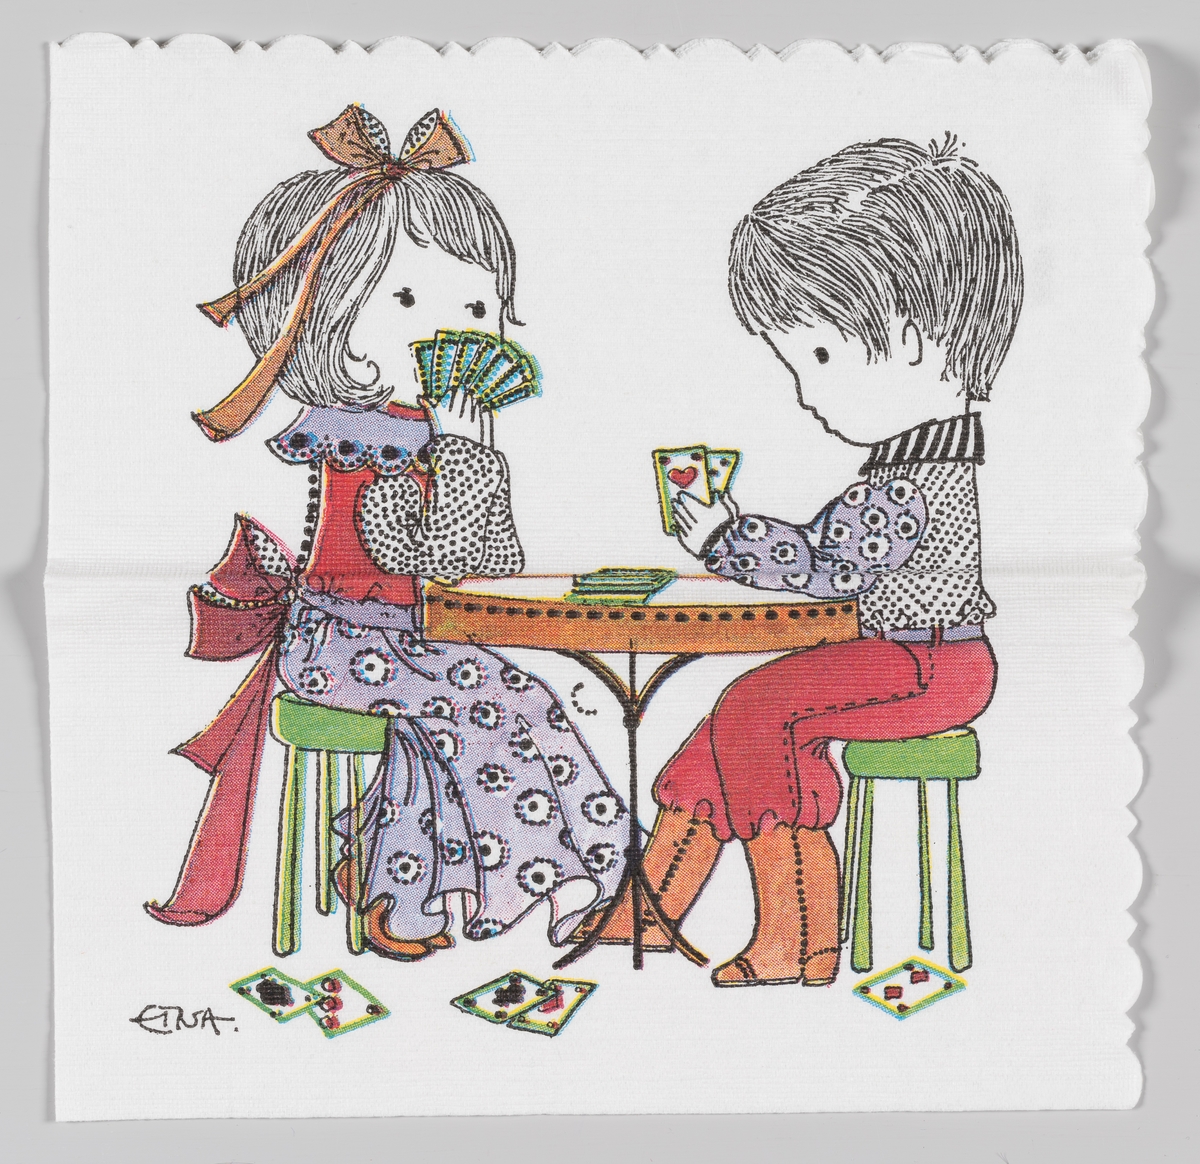 En gutt og en jente spiller kort ved et rundt bord.